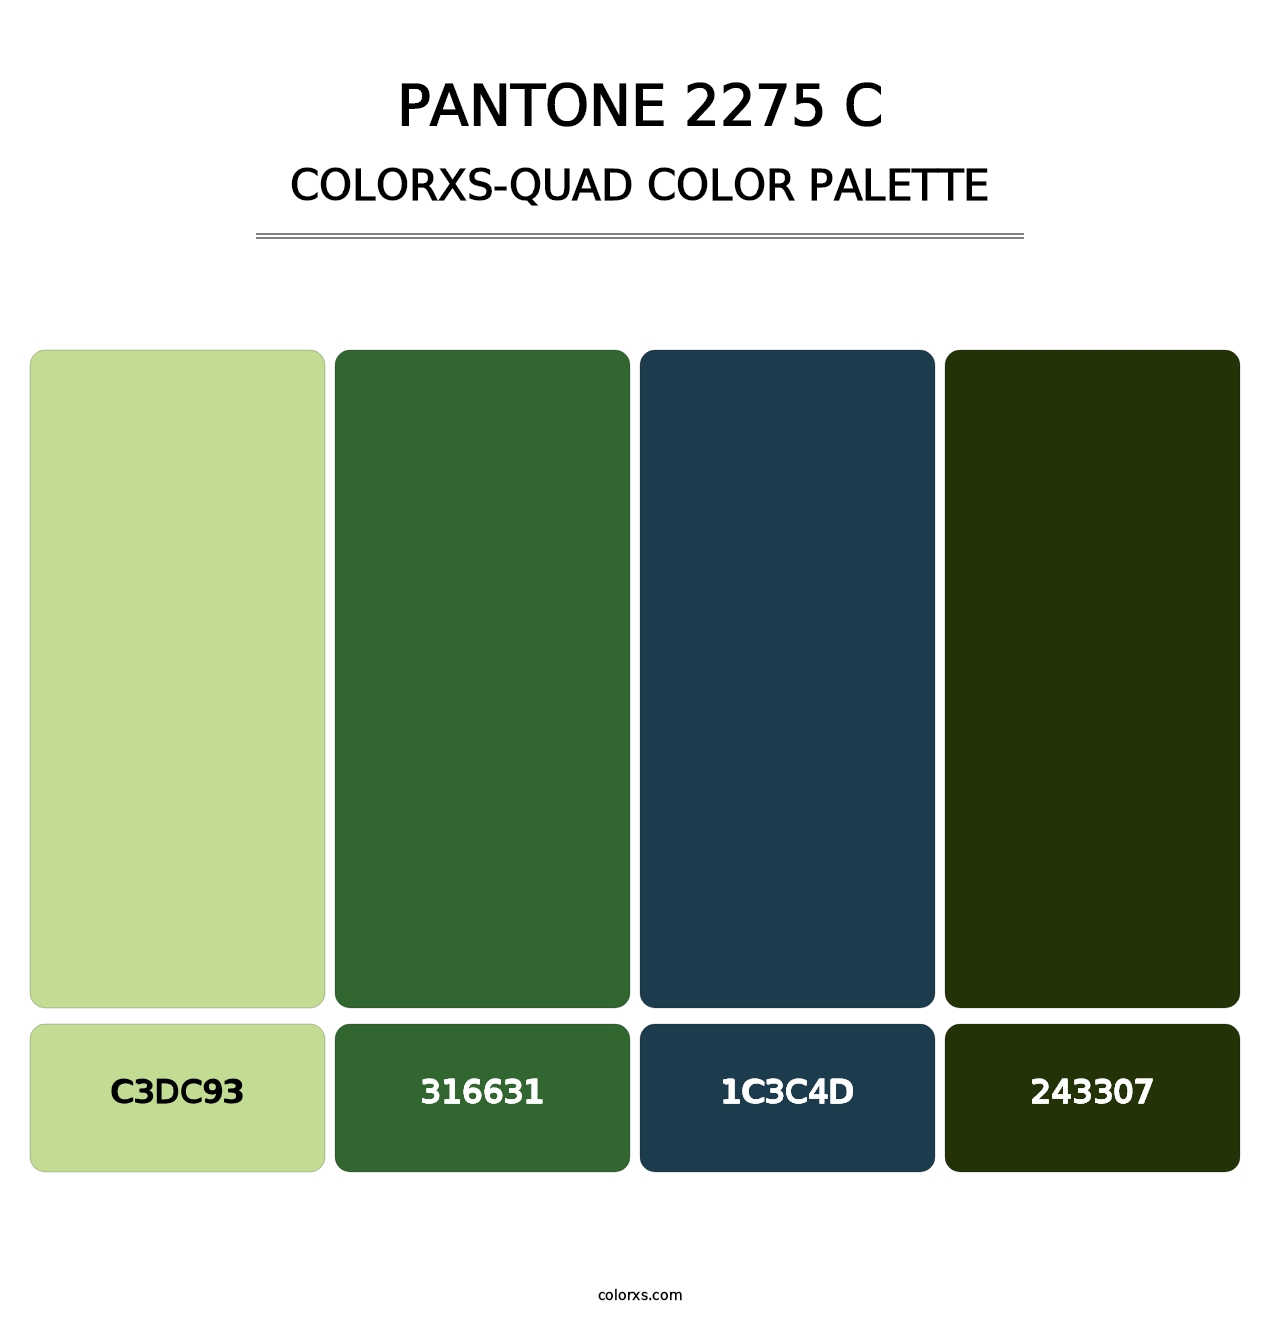 PANTONE 2275 C - Colorxs Quad Palette